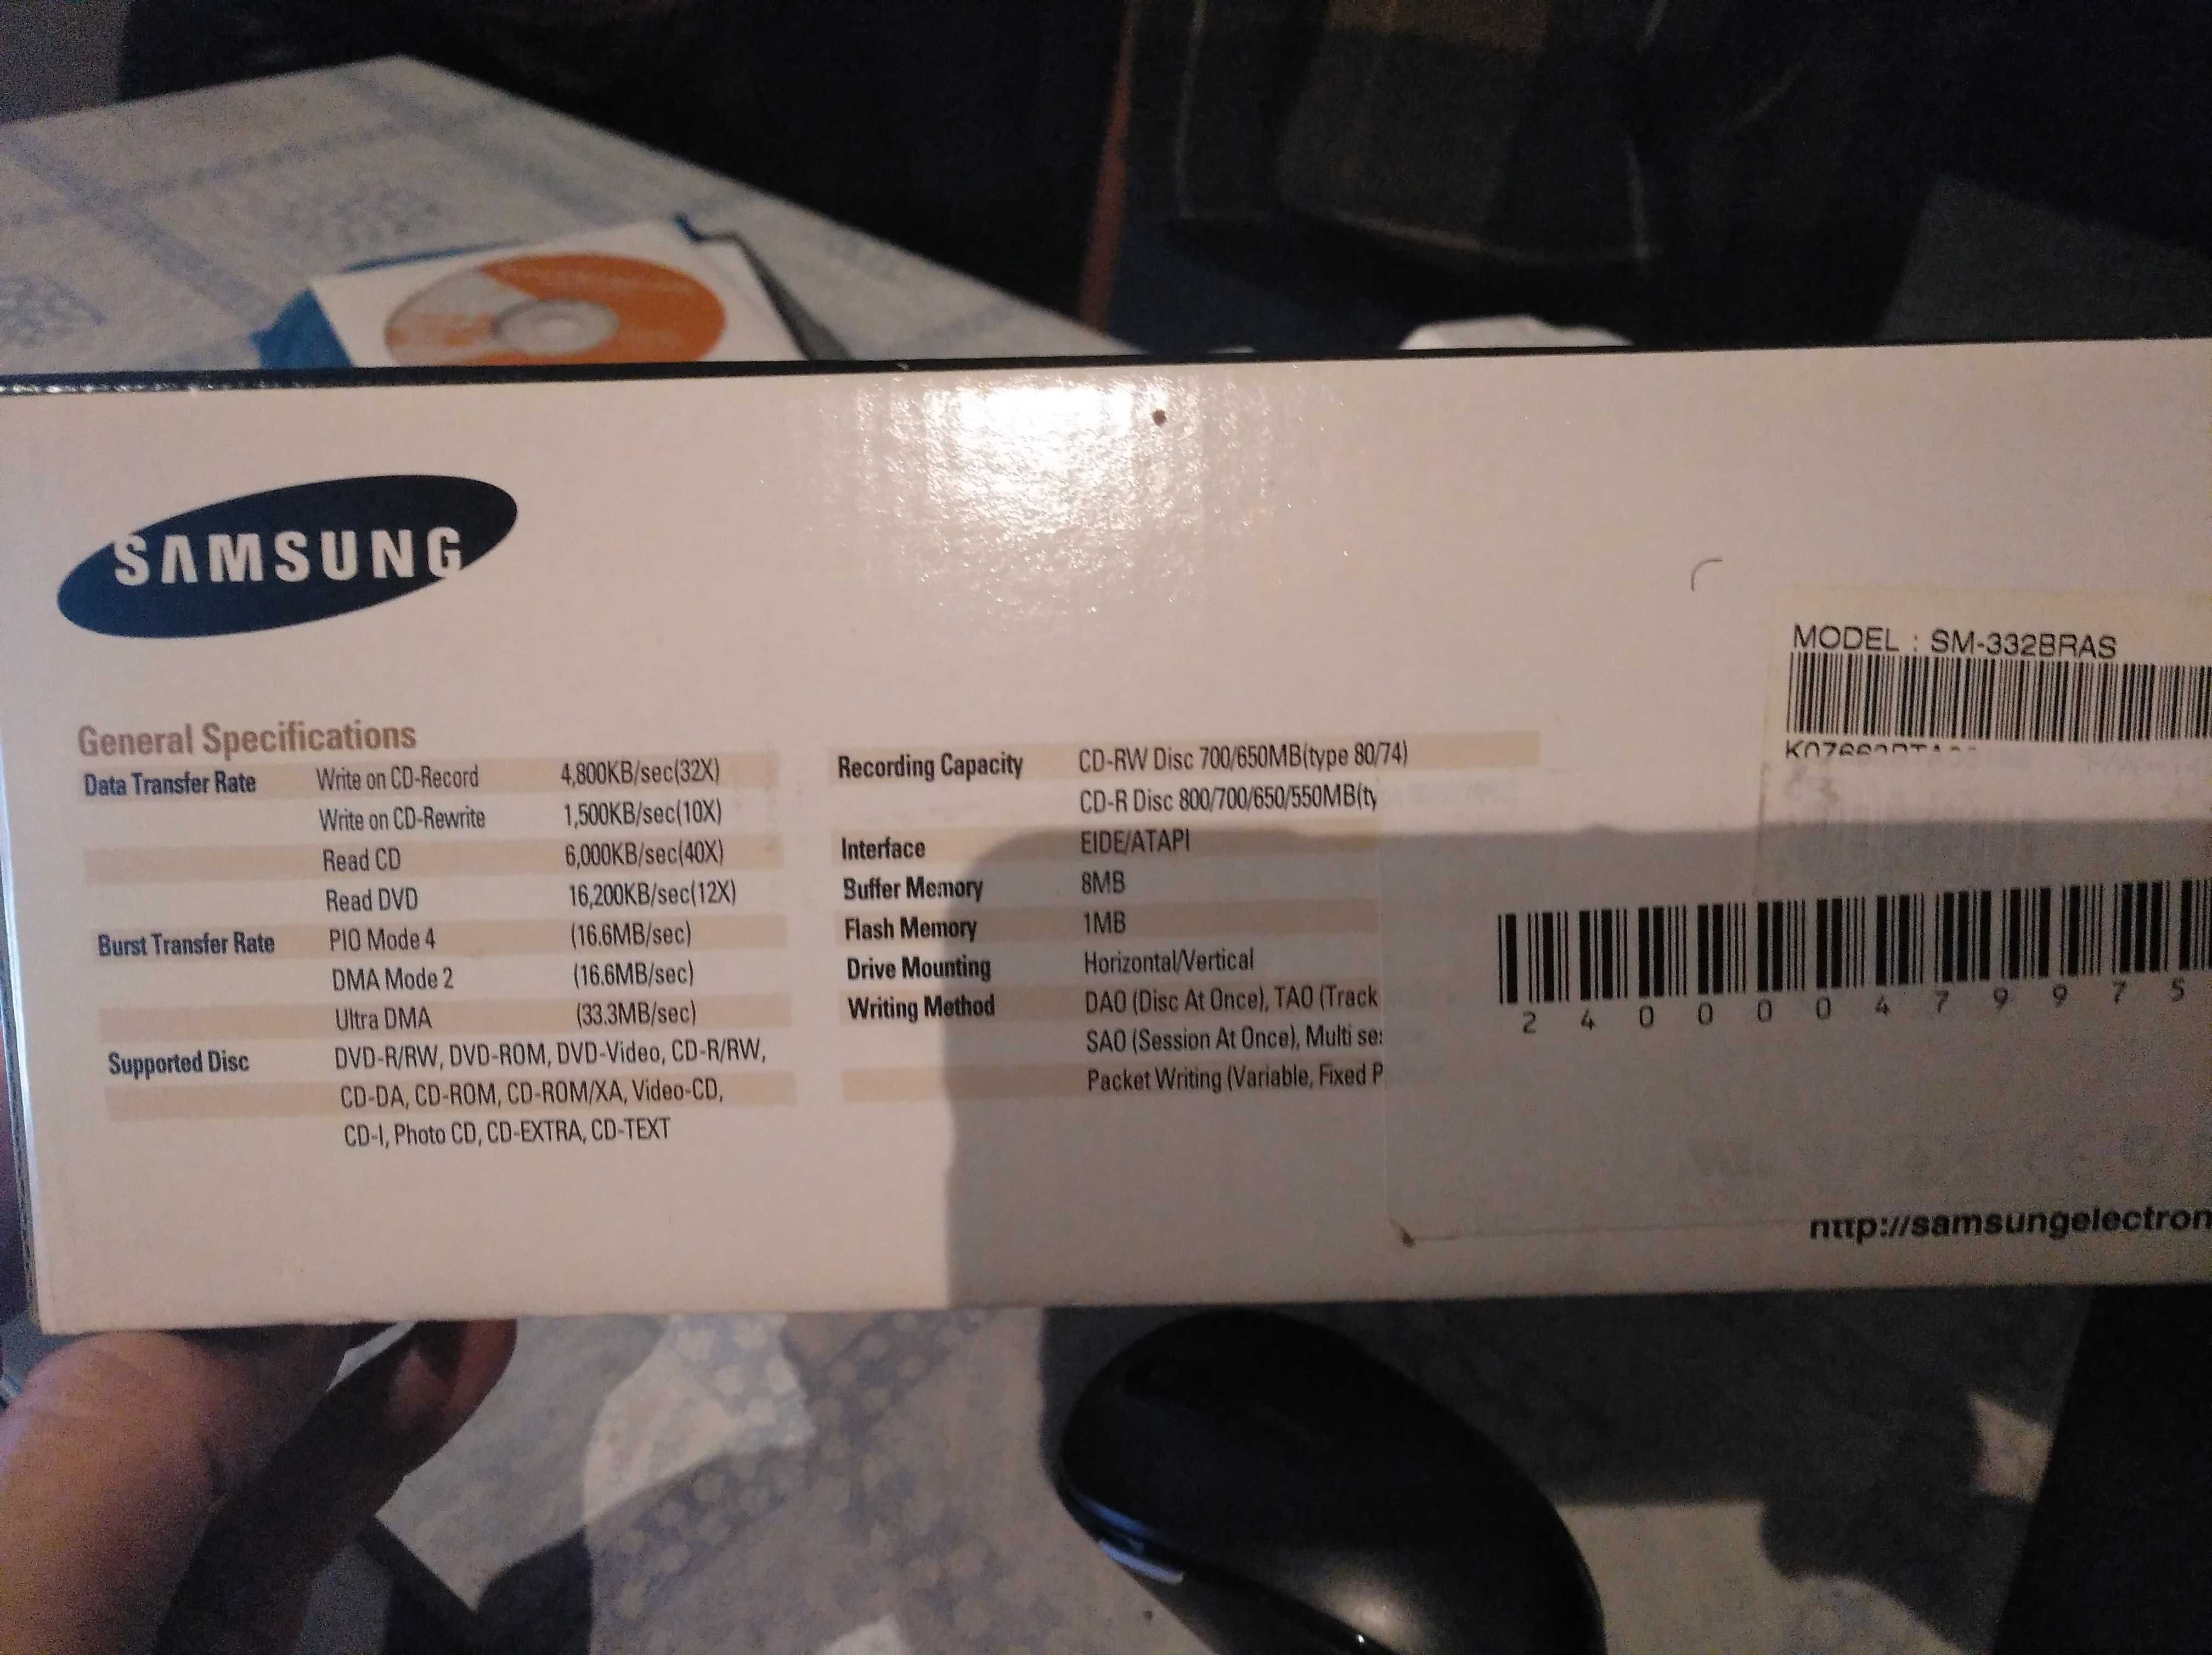 Gravador CD-RW / Leitor DVD-ROM Combo Samsung SM-332